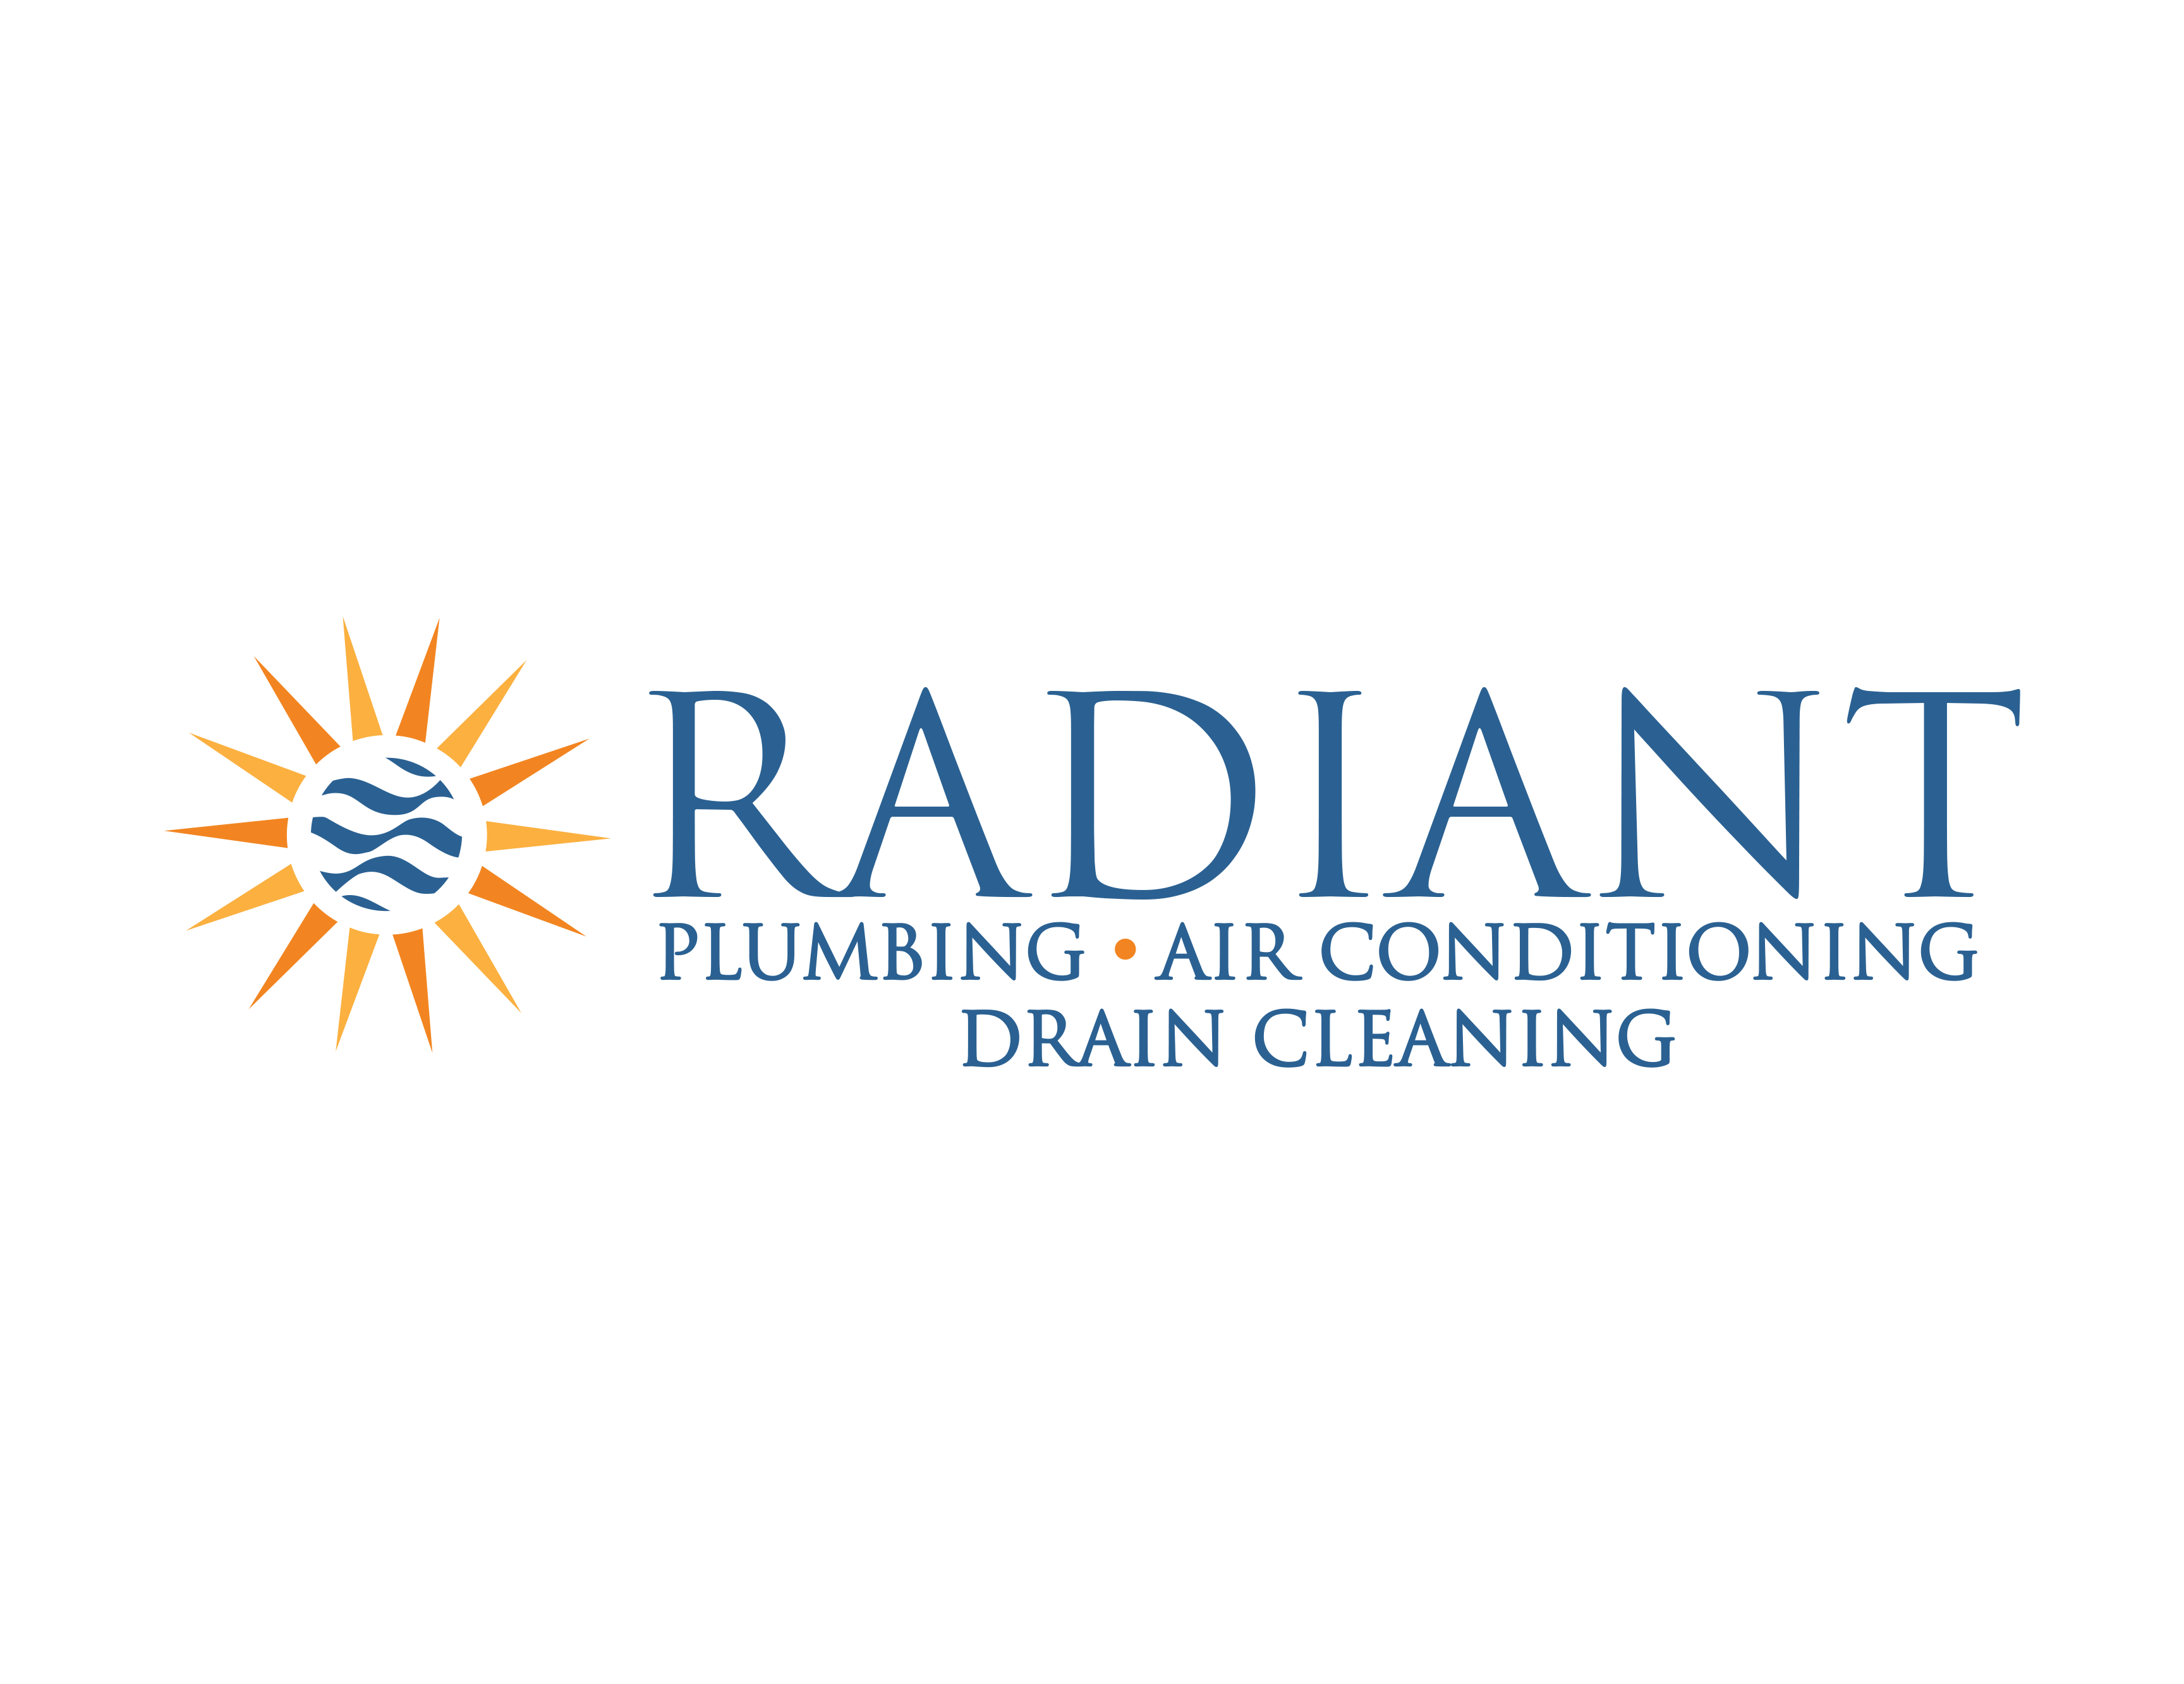 Radiant Plumbing & Air Conditioning - San Antonio